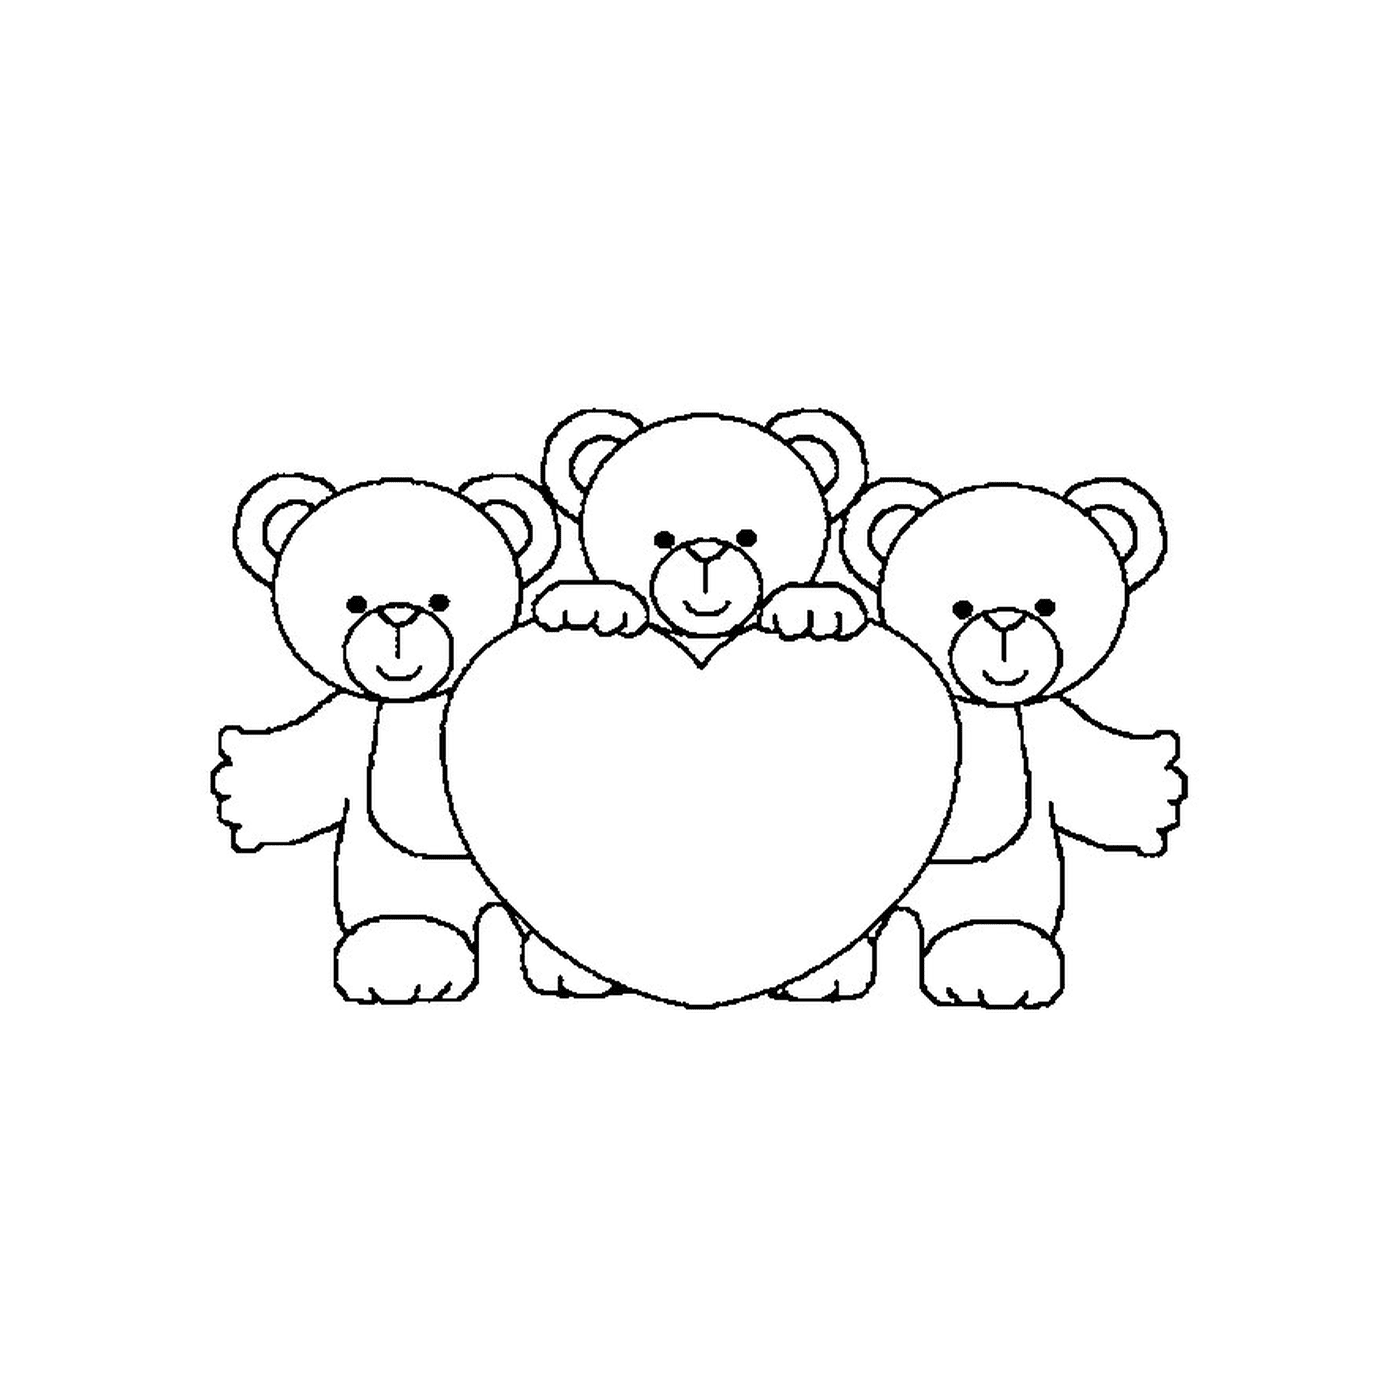  Drei Teddybären, die ein großes Herz halten 